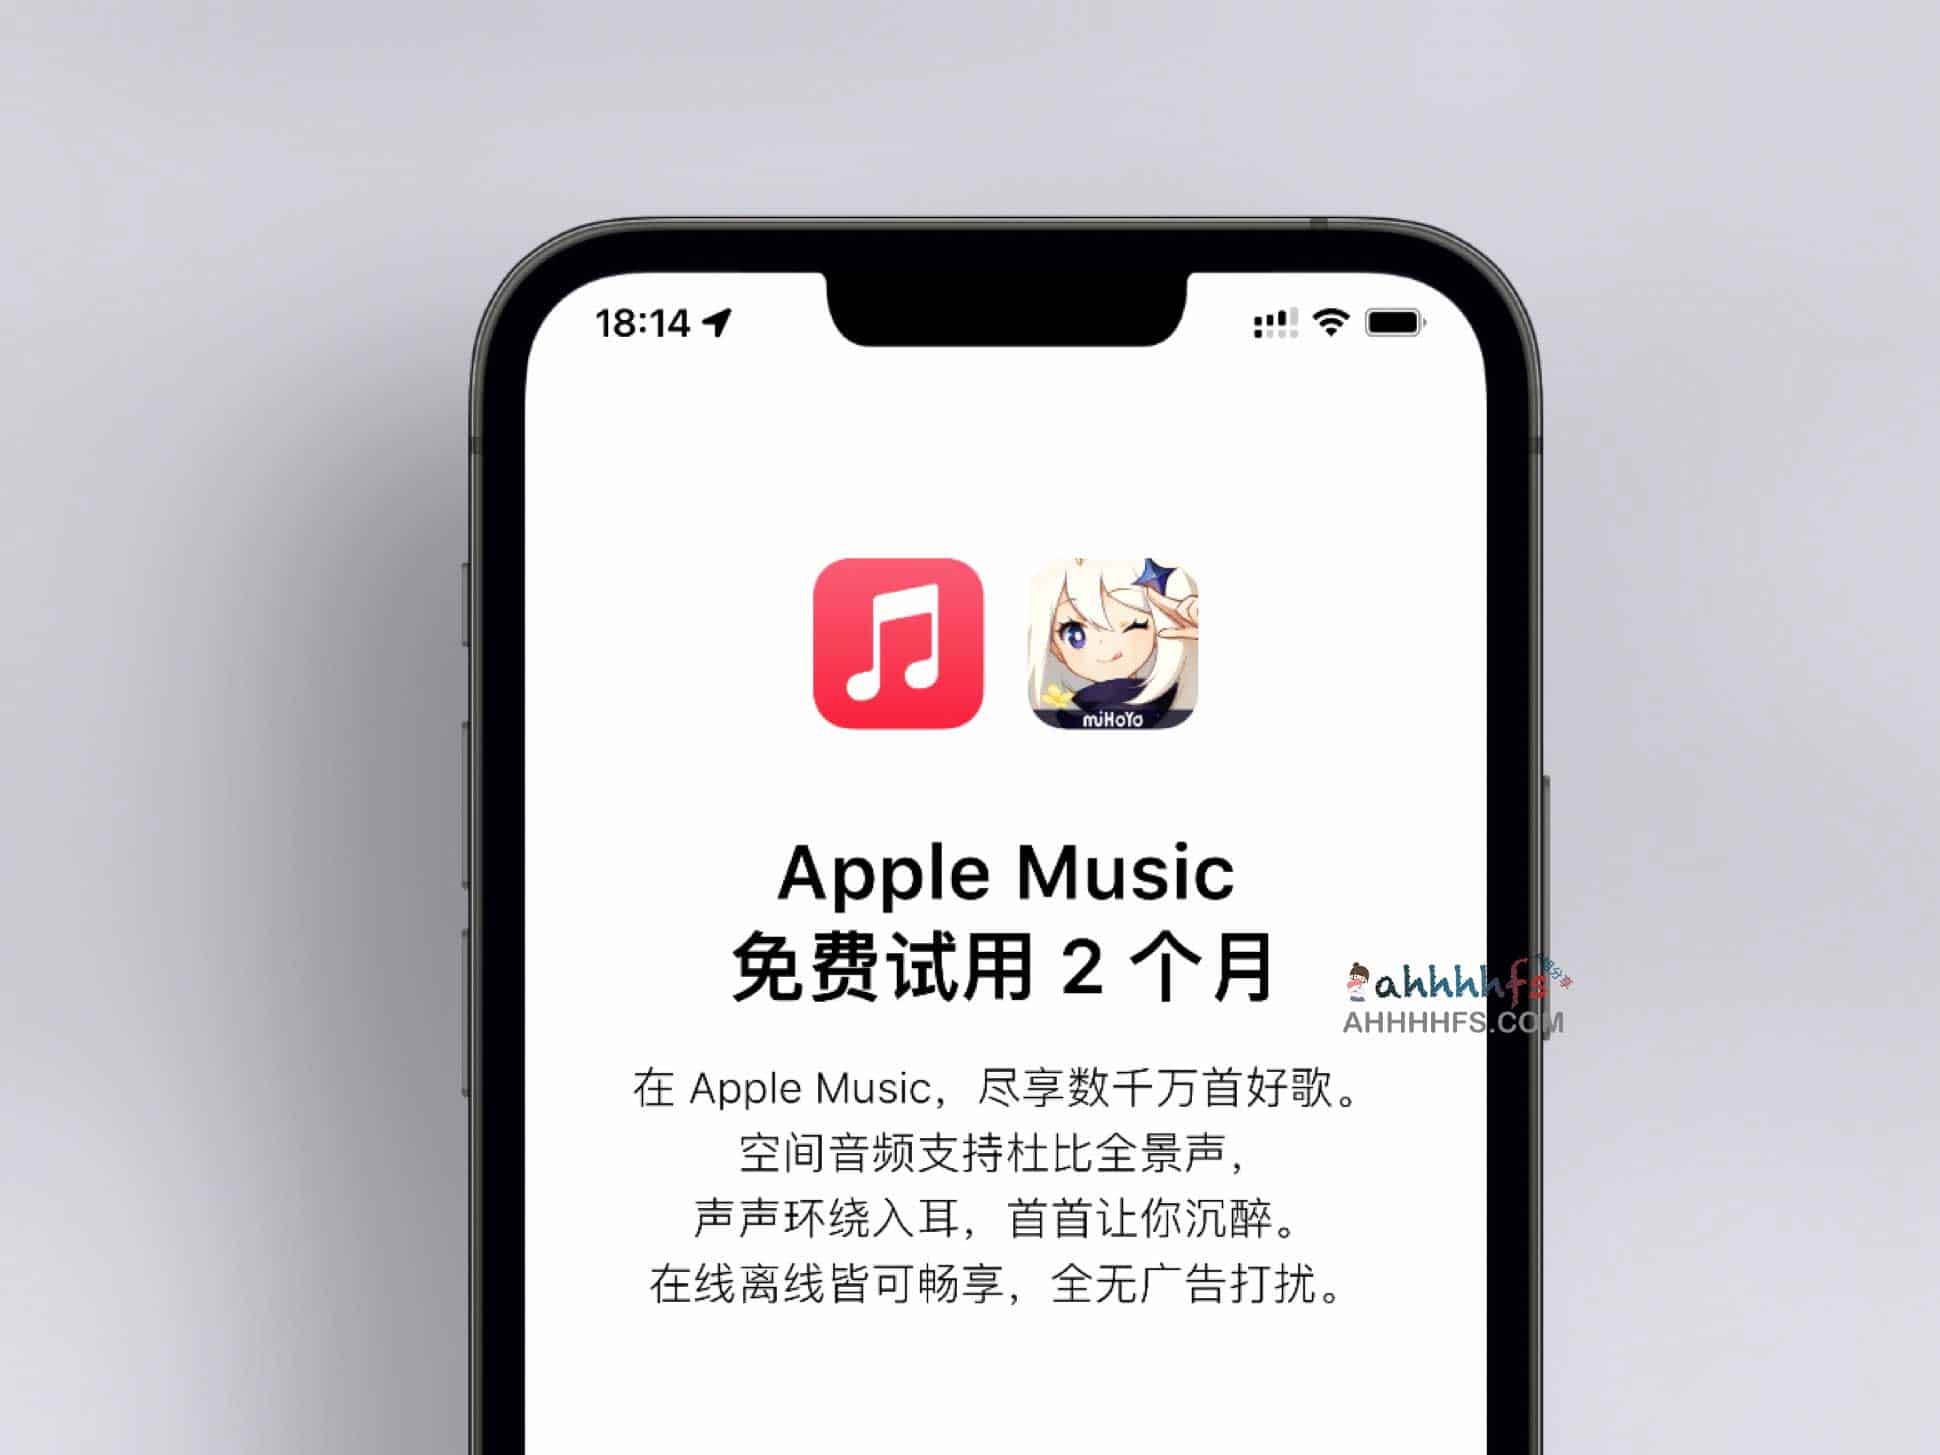 Apple Music 免费试用 2个月插图